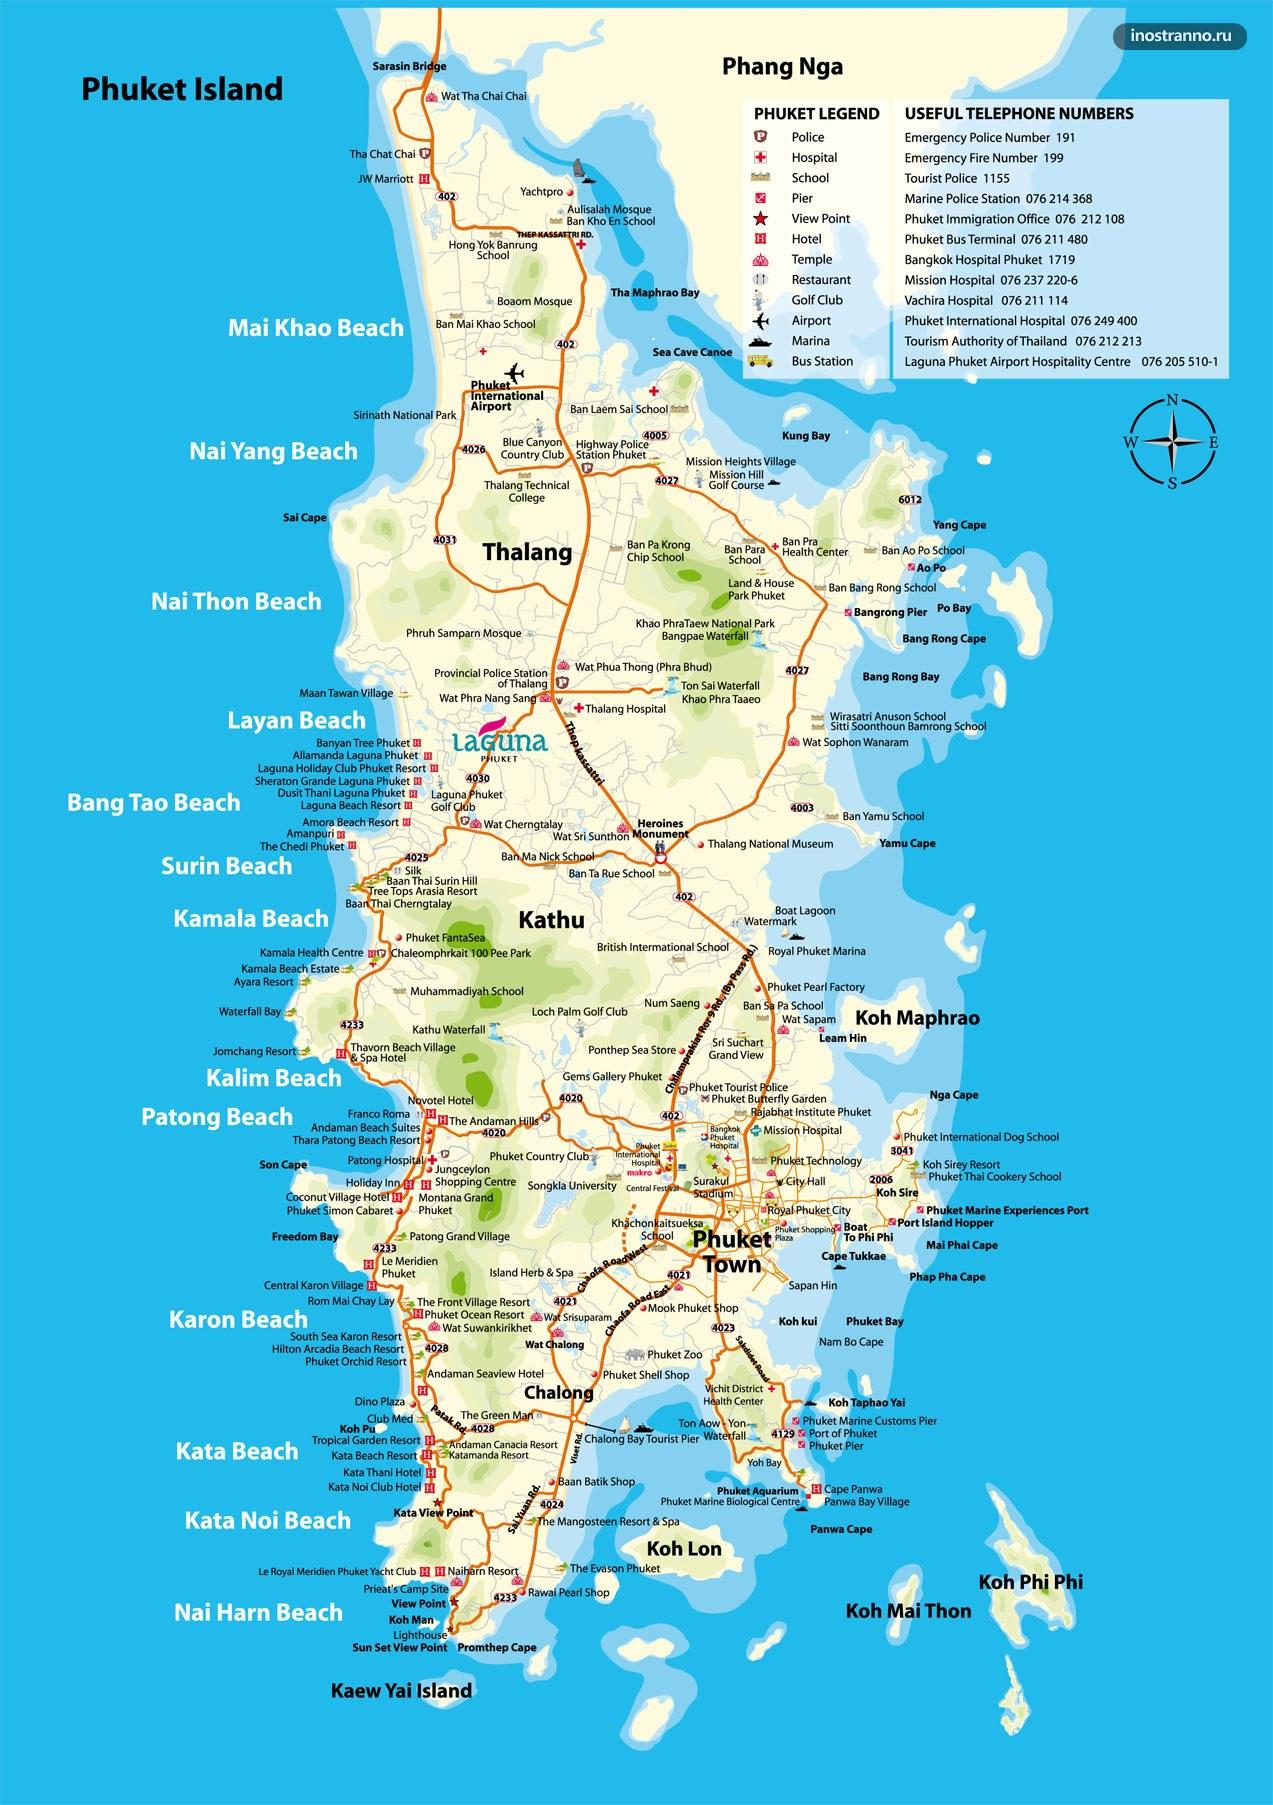 http://inostranno.ru/wp-content/uploads/2016/07/Phuket-Map.jpg